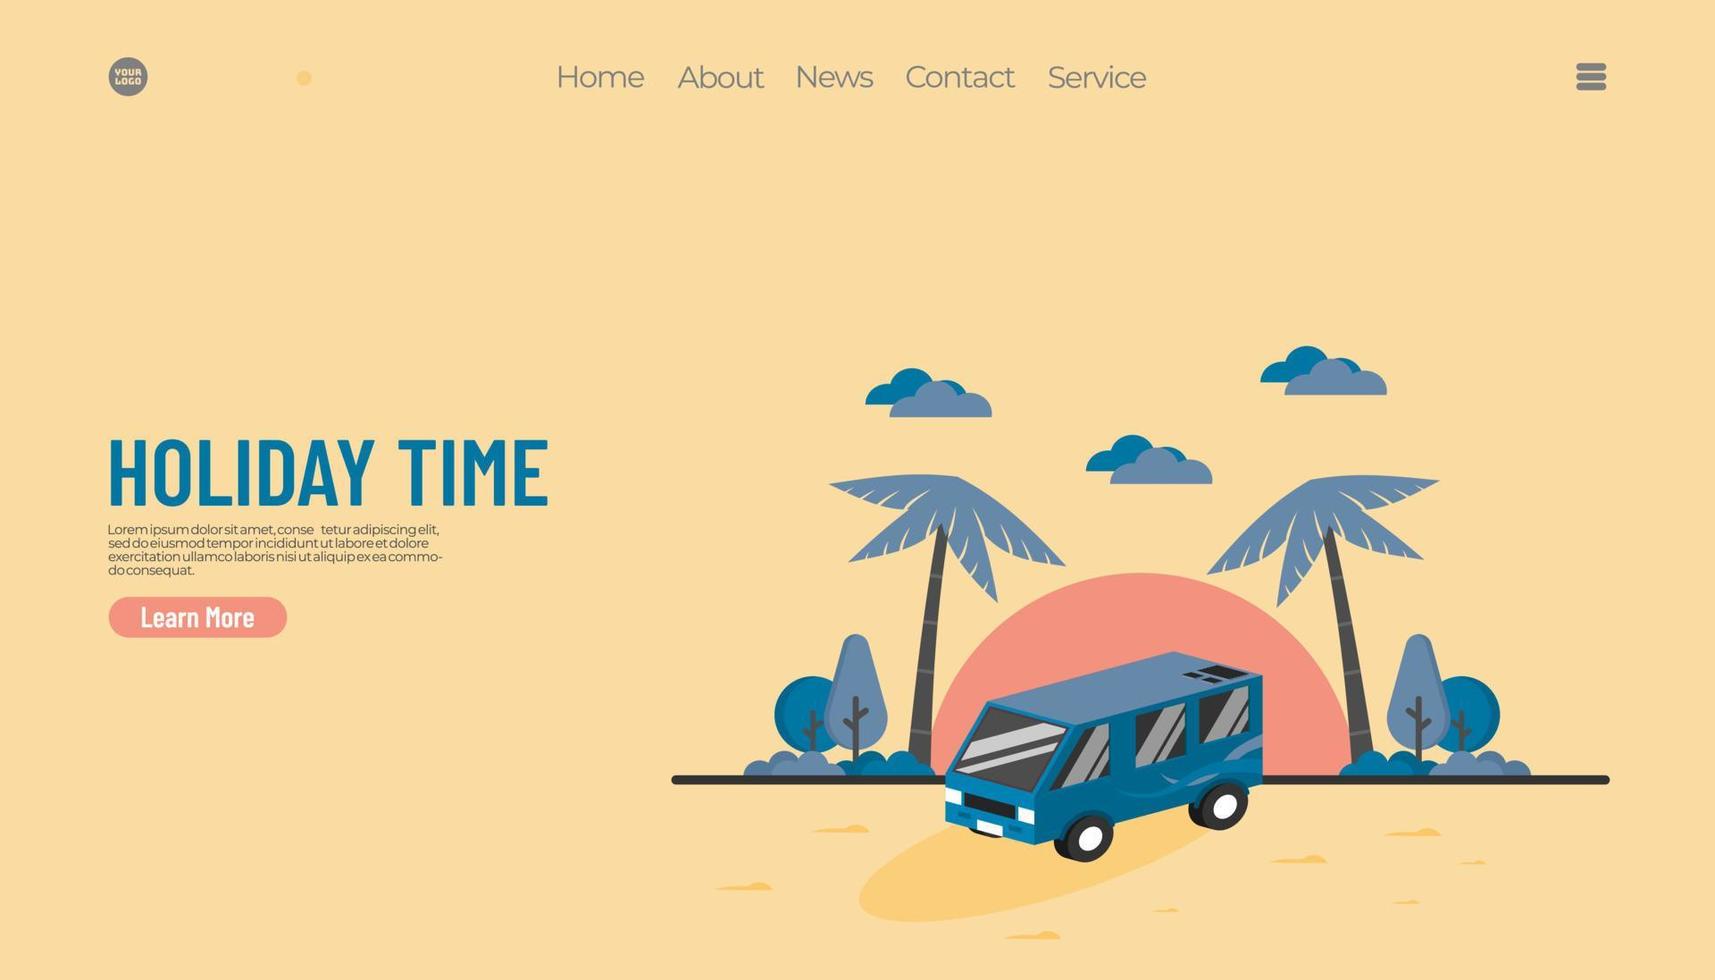 gráfico de ilustração vetorial do conceito de férias de verão, carro de van com fundo de praia. bom para página de destino da web vetor